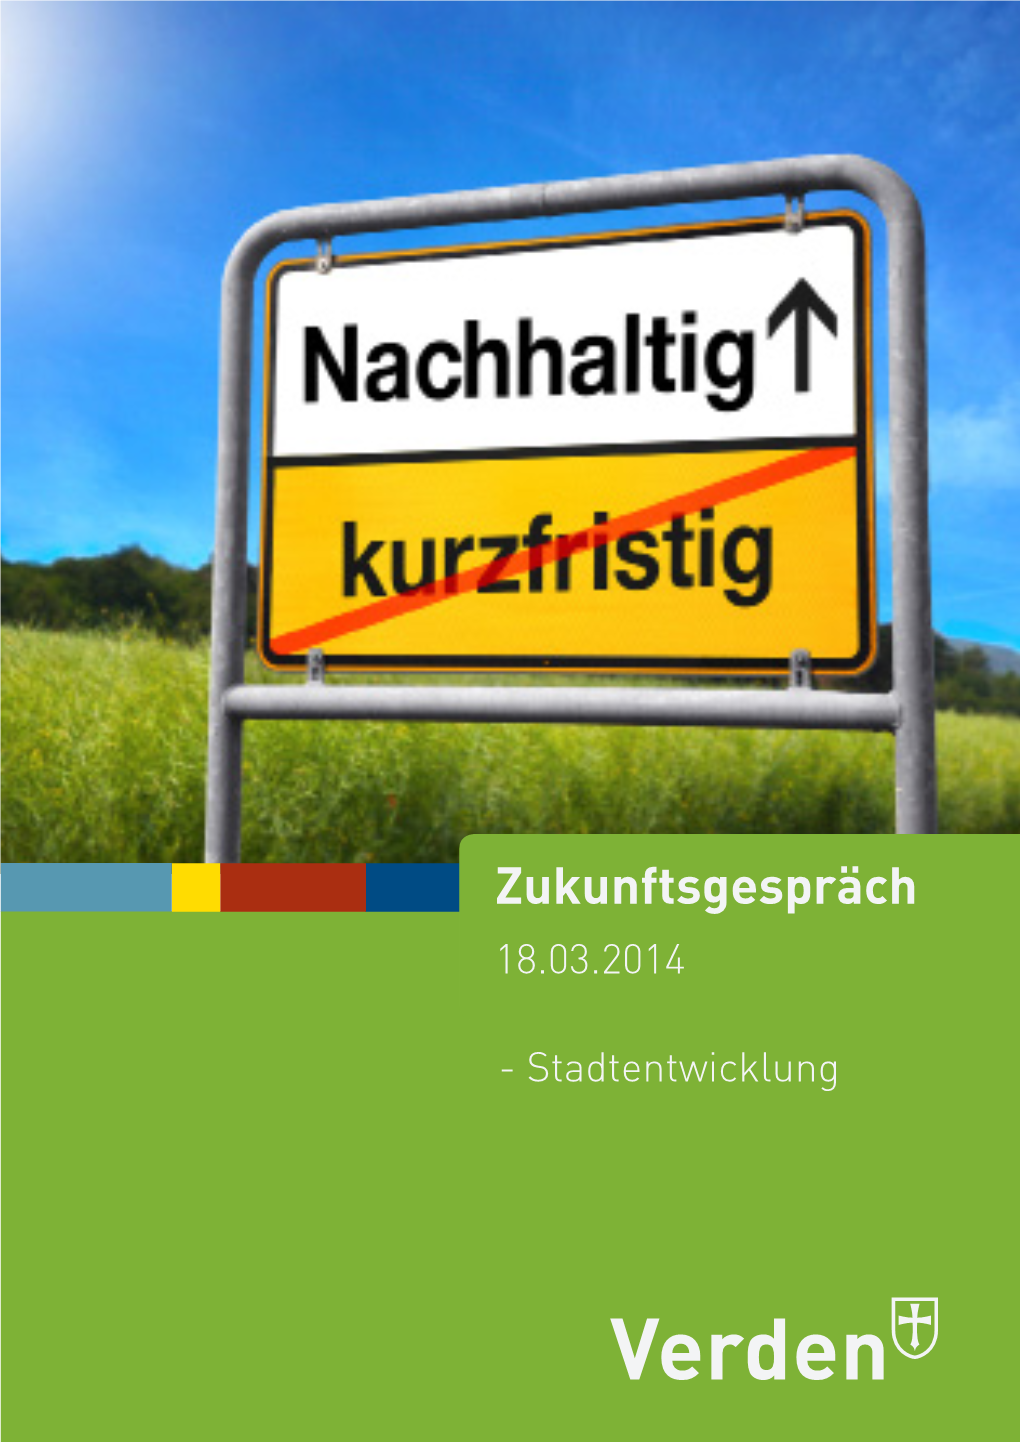 Deckblatt Zukunftsgespräch 18.03.2014.Indd